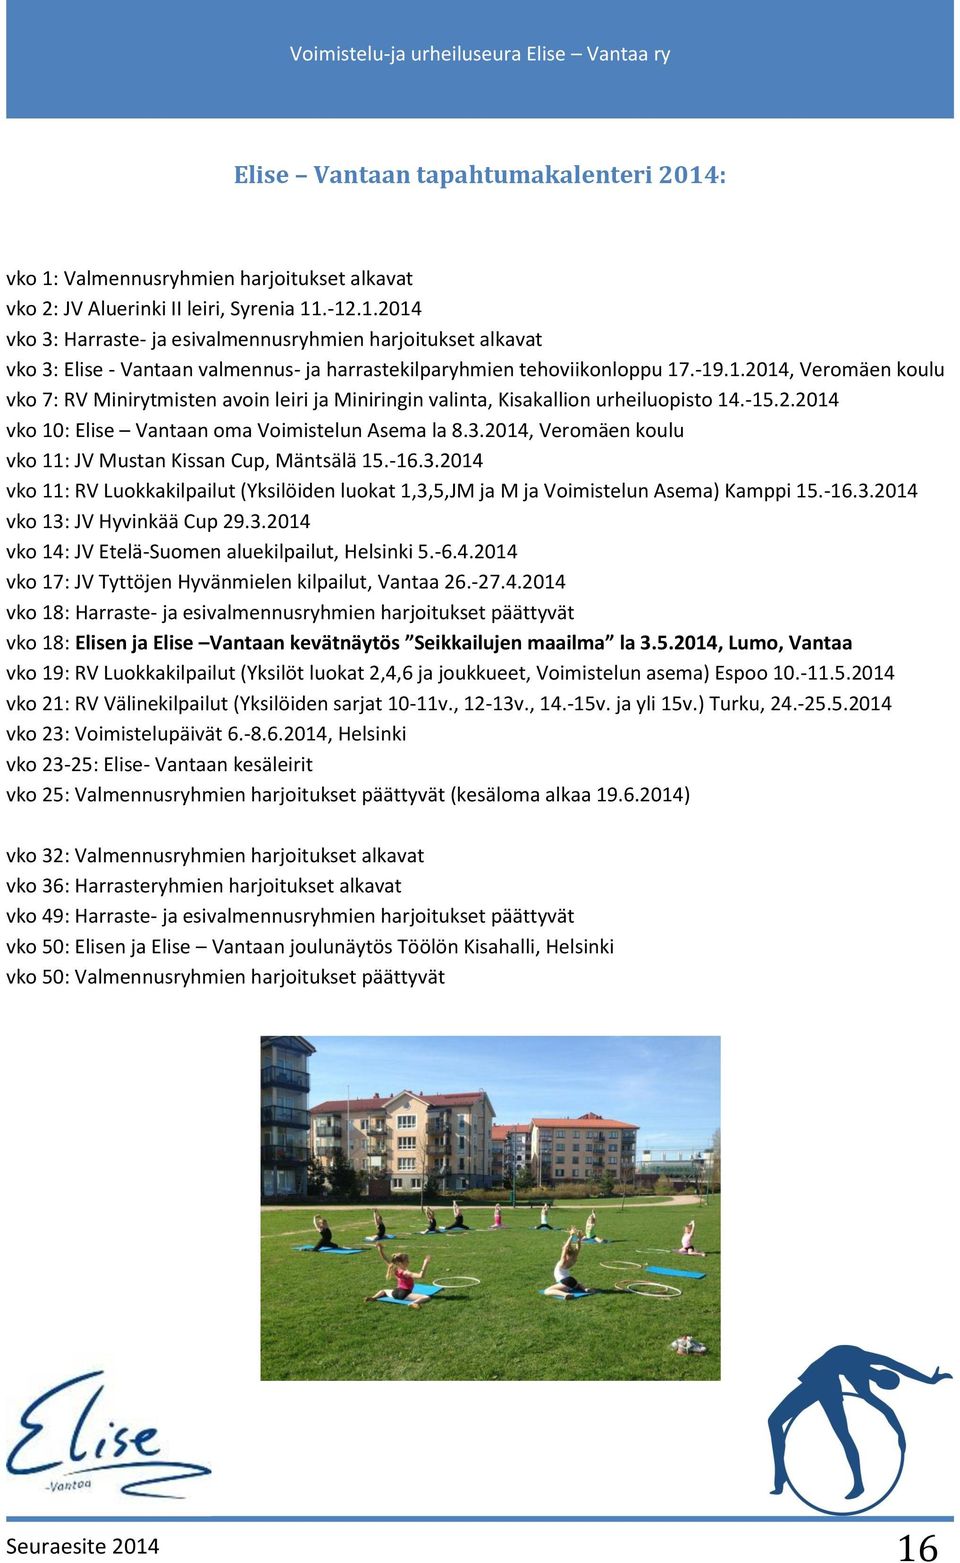 2014, Veromäen koulu vko 11: JV Mustan Kissan Cup, Mäntsälä 15.-16.3.2014 vko 11: RV Luokkakilpailut (Yksilöiden luokat 1,3,5,JM ja M ja Voimistelun Asema) Kamppi 15.-16.3.2014 vko 13: JV Hyvinkää Cup 29.